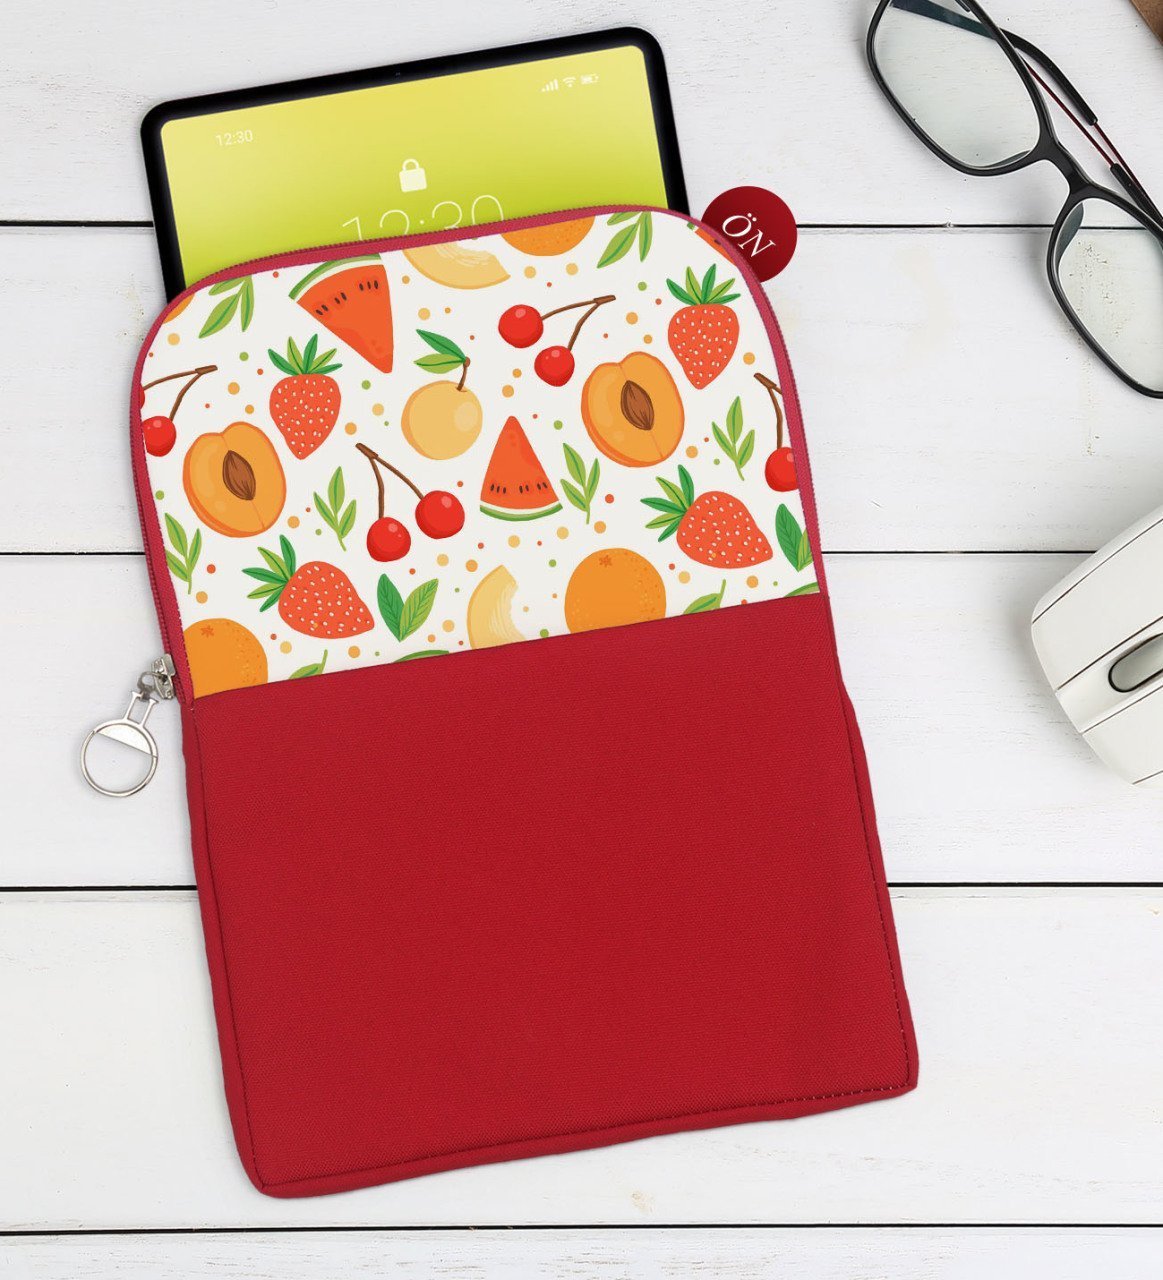 BK Gift Meyveler Tasarımlı Taşınabilir Koruyucu Tablet Kılıfı & Organizer Çanta - Kırmızı-1